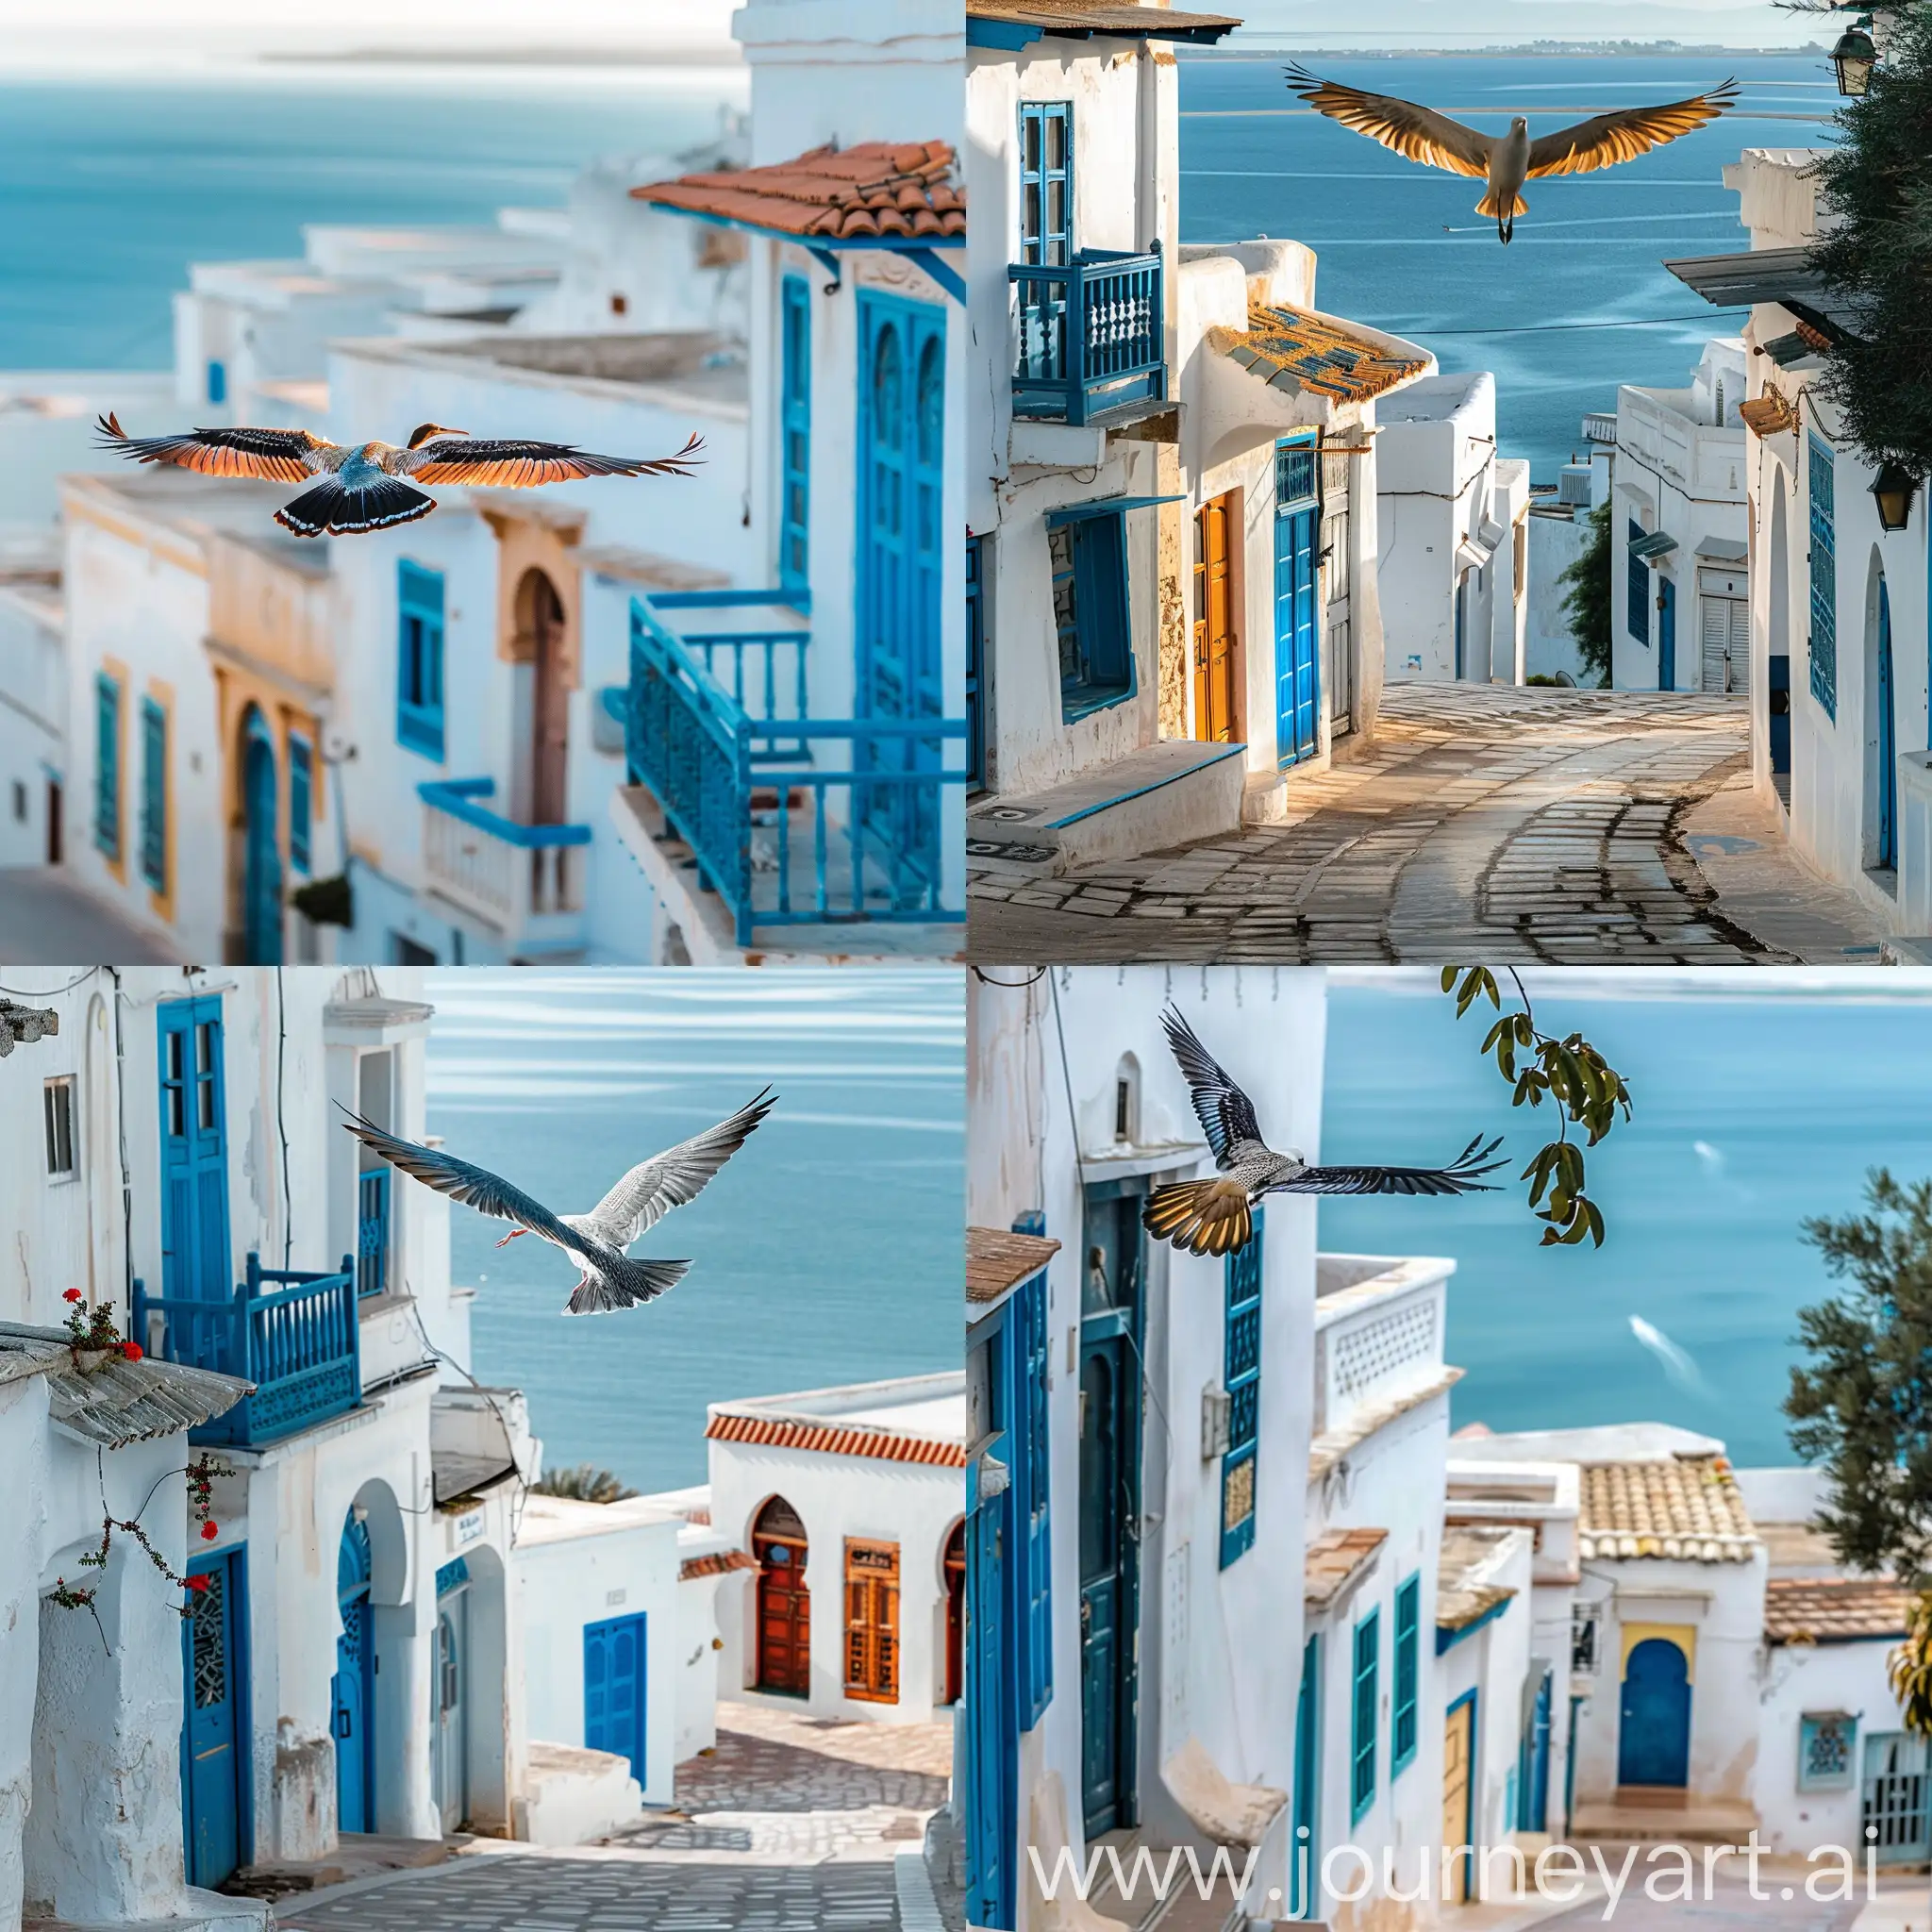 Graceful-Flight-of-a-Colorful-Bird-over-Sidi-Bou-Said-Tunisia